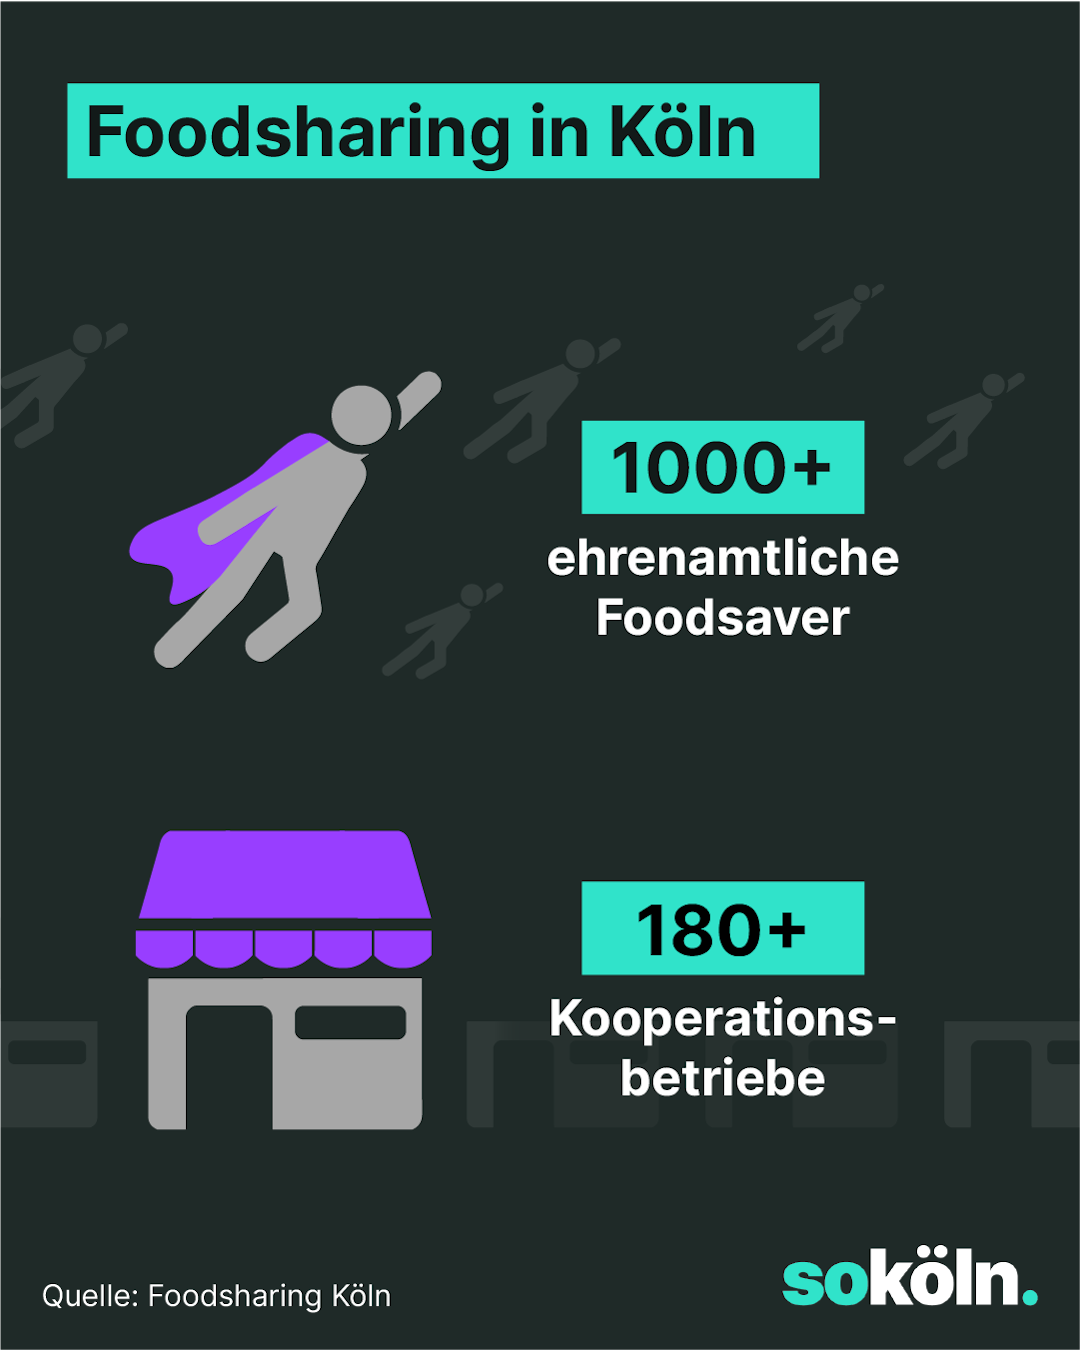 Foodsharing in Köln